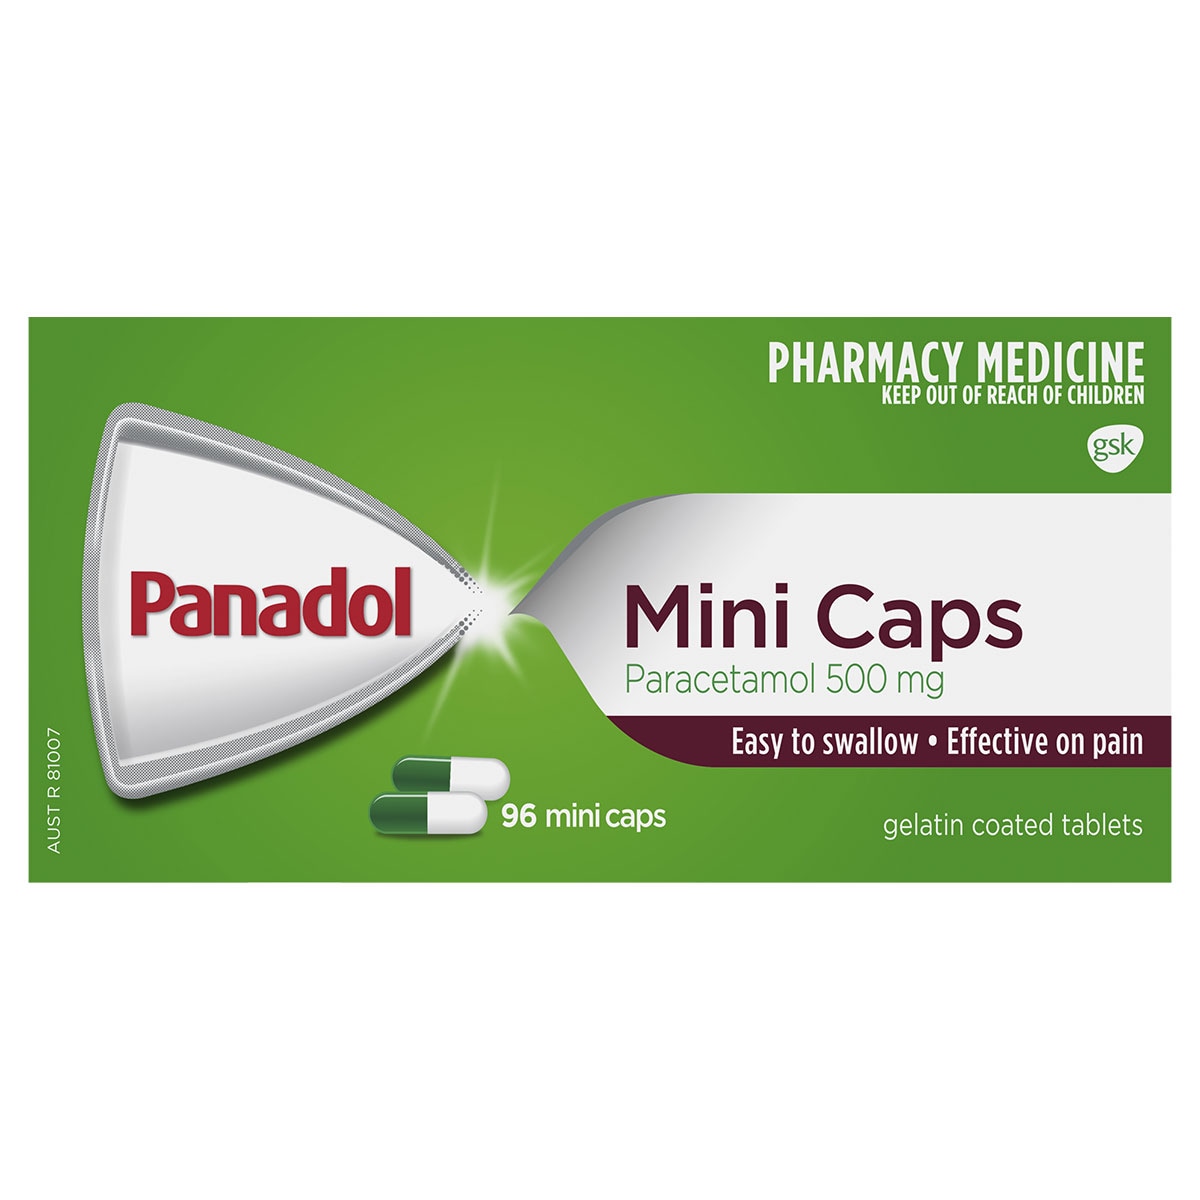 Panadol Mini Caps Pain Relief 96 Mini Caps